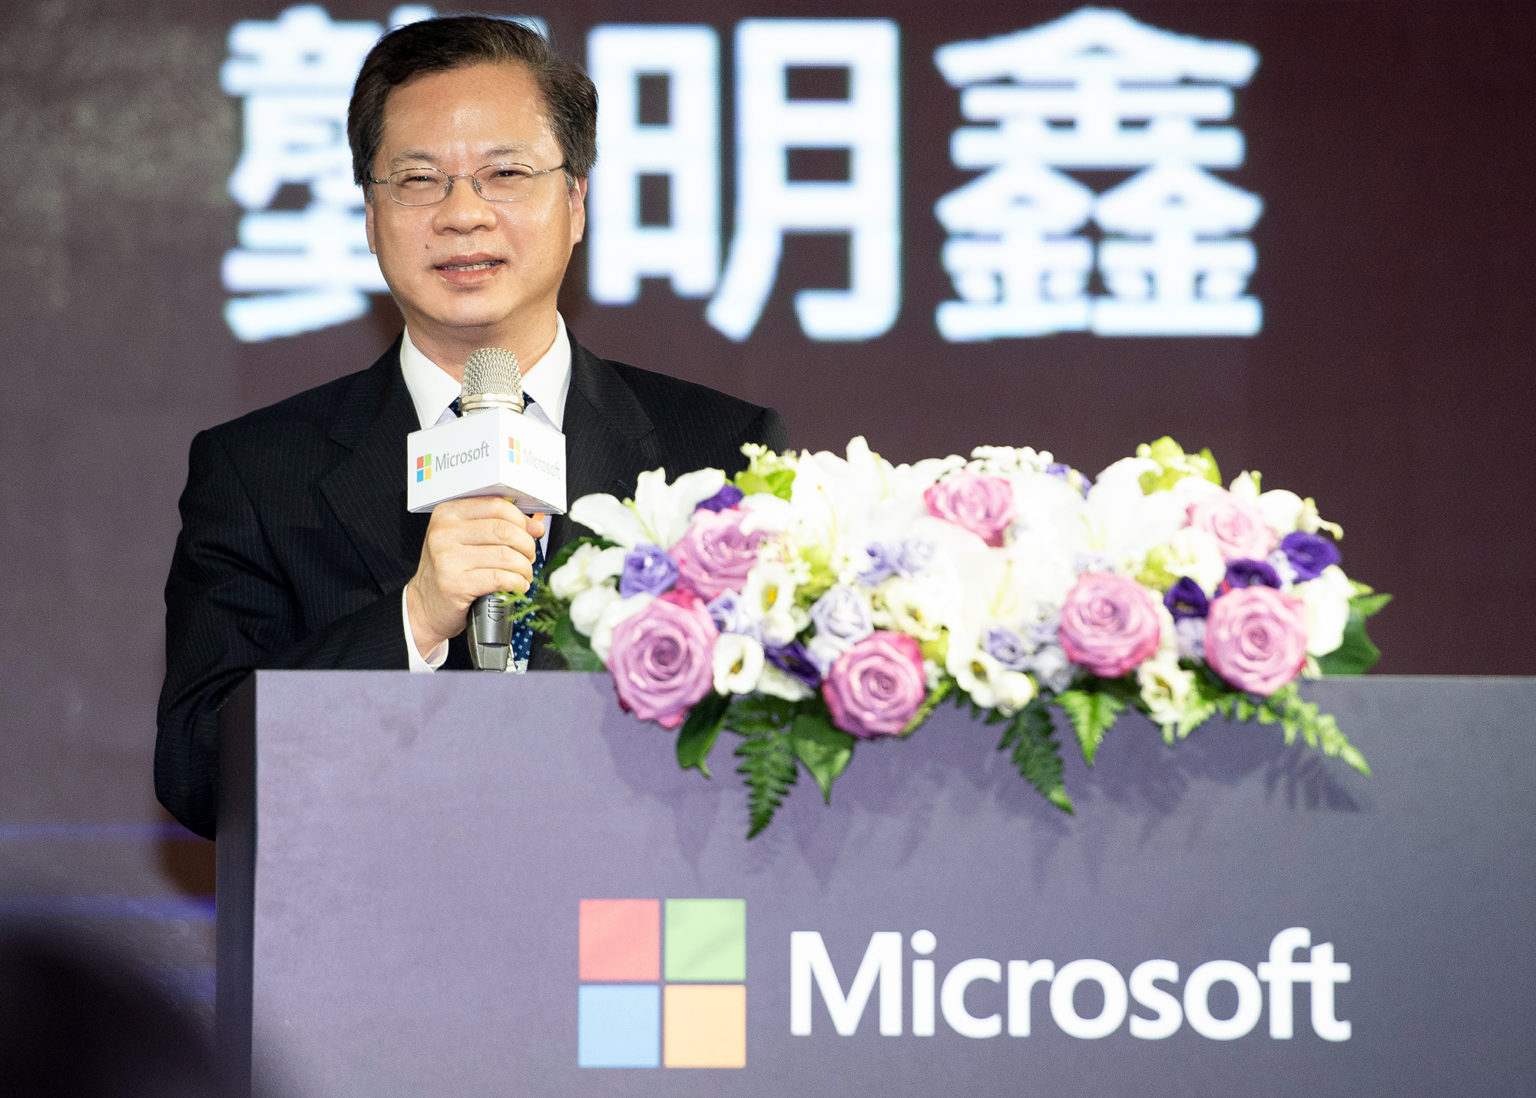 國家發展委員會主任委員 龔明鑫表示微軟與其夥伴所建構的生態系所帶來深遠的影響